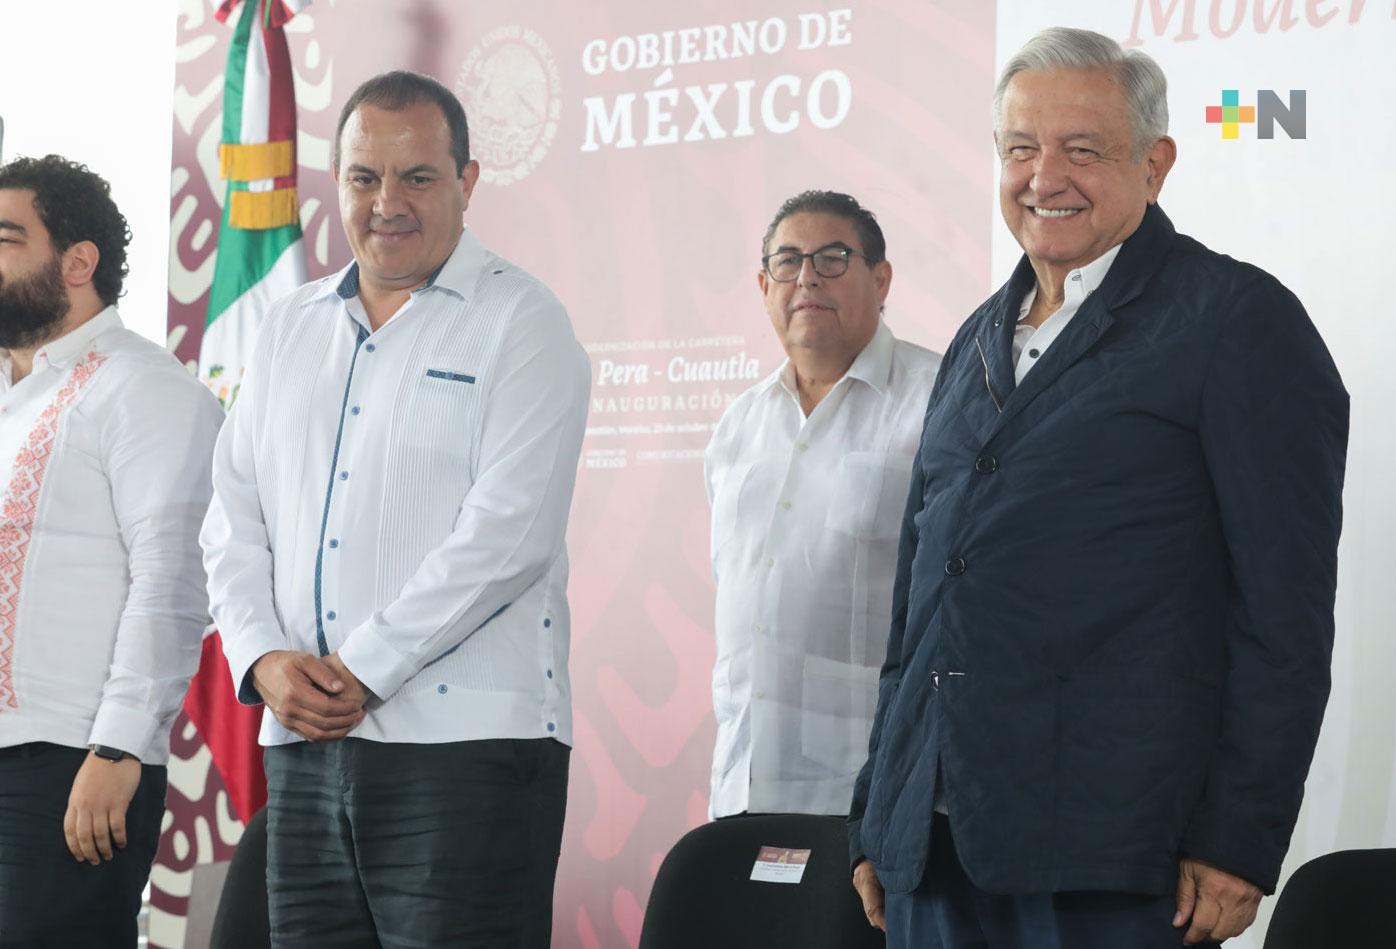 Presidente inaugura modernización de carretera La Pera-Cuautla en Morelos